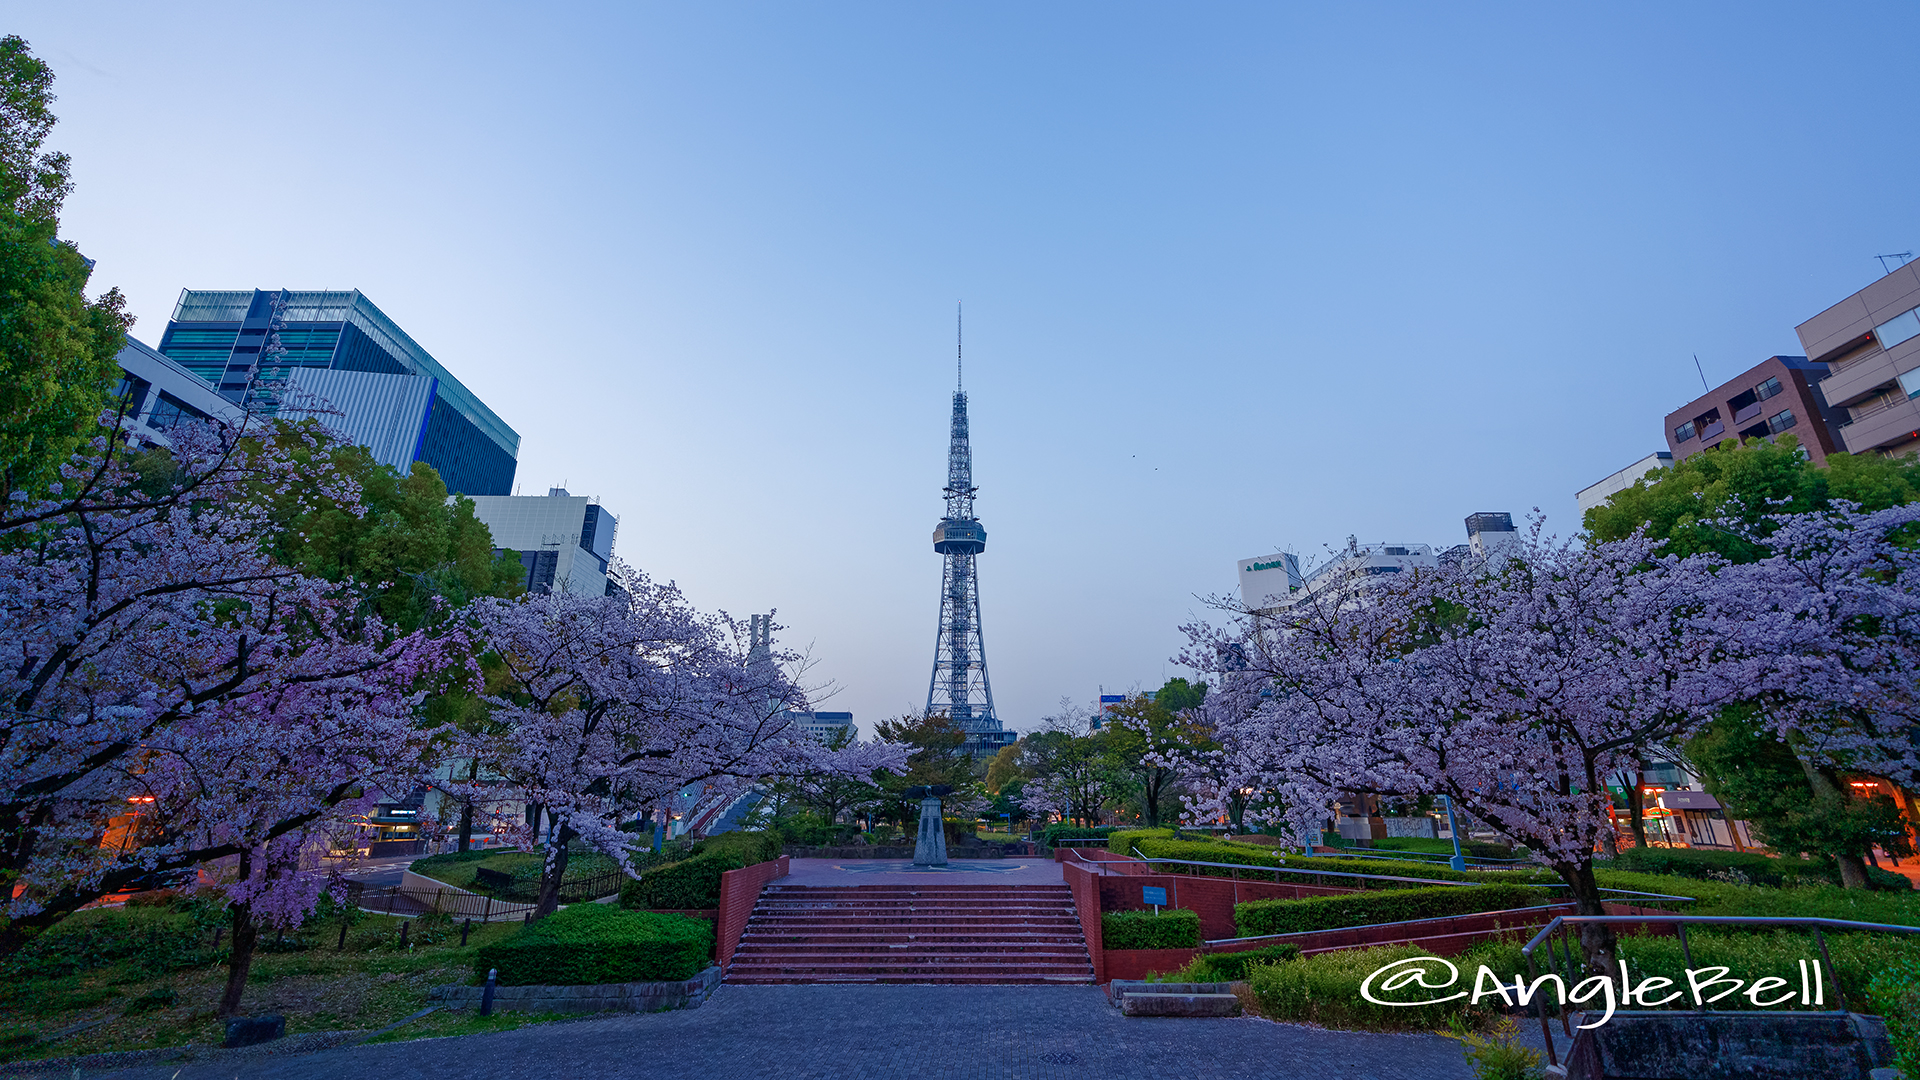 早朝 いこいの広場から見た名古屋テレビ塔と白頭鷲の像 March 2018